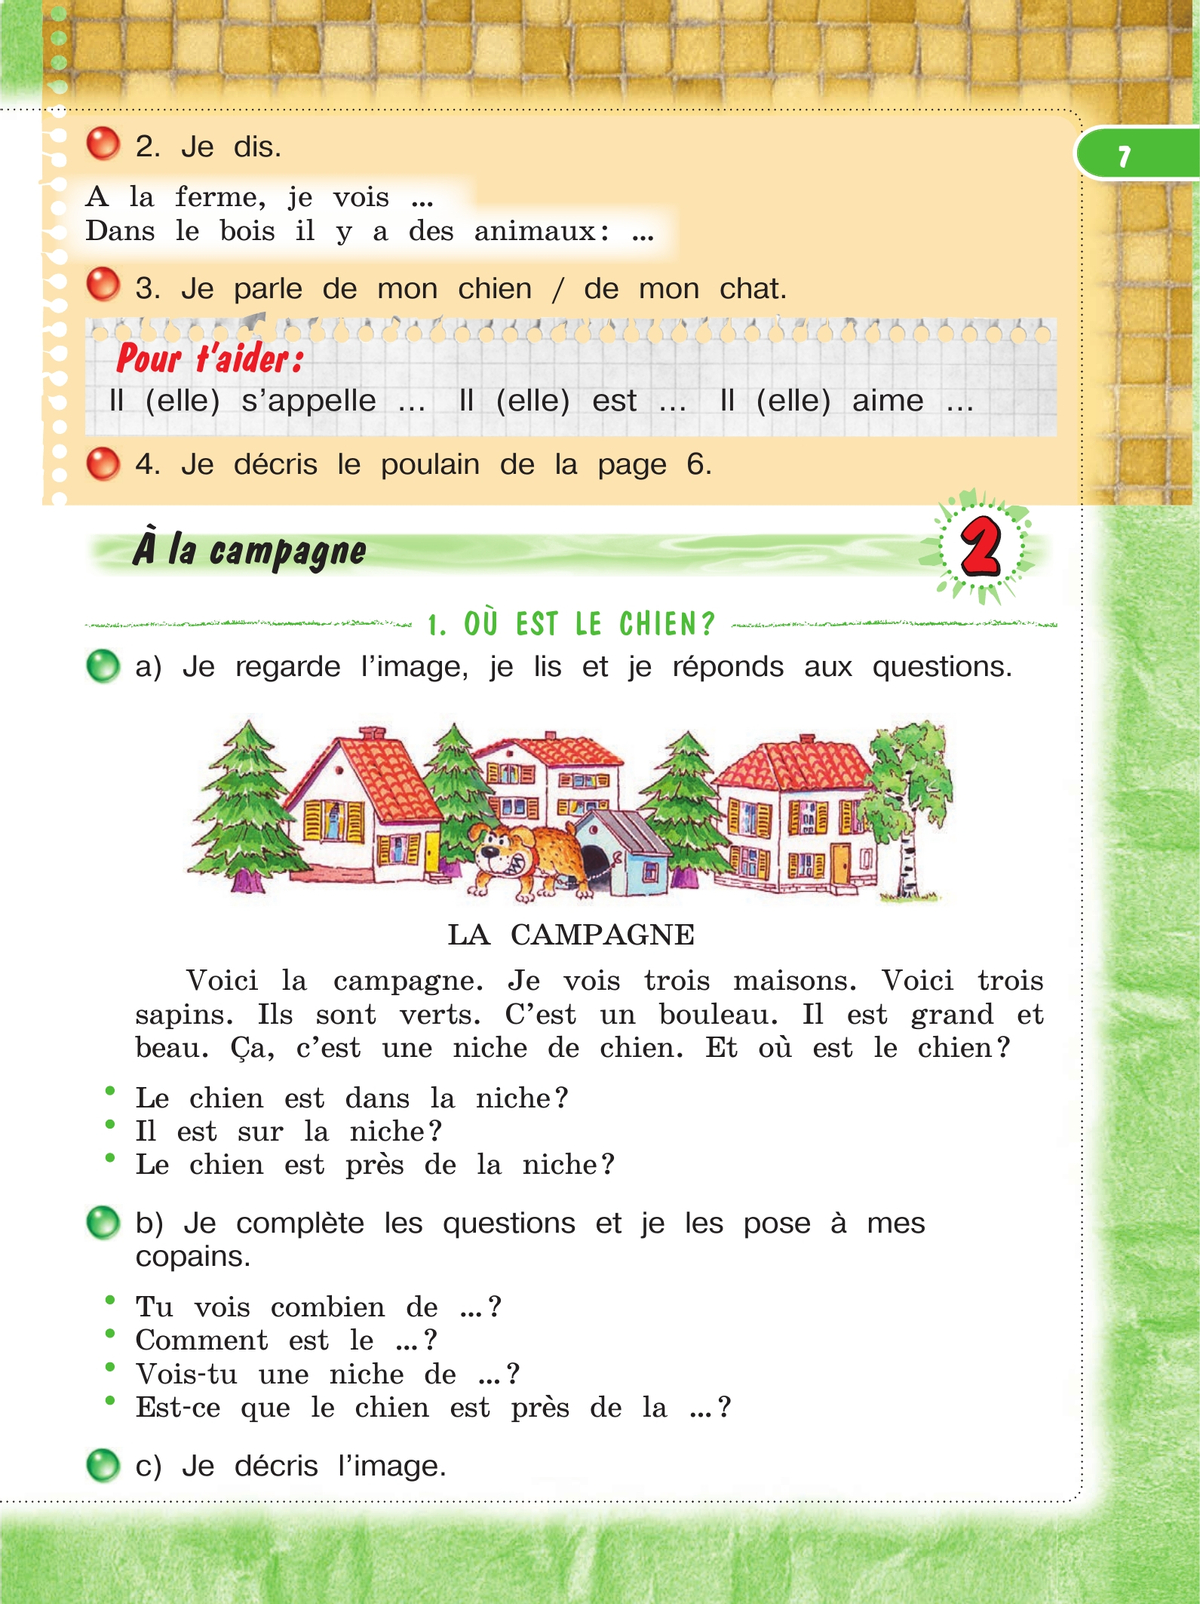 Французский язык. 3 класс. Учебник. В 2 ч. Часть 1 8